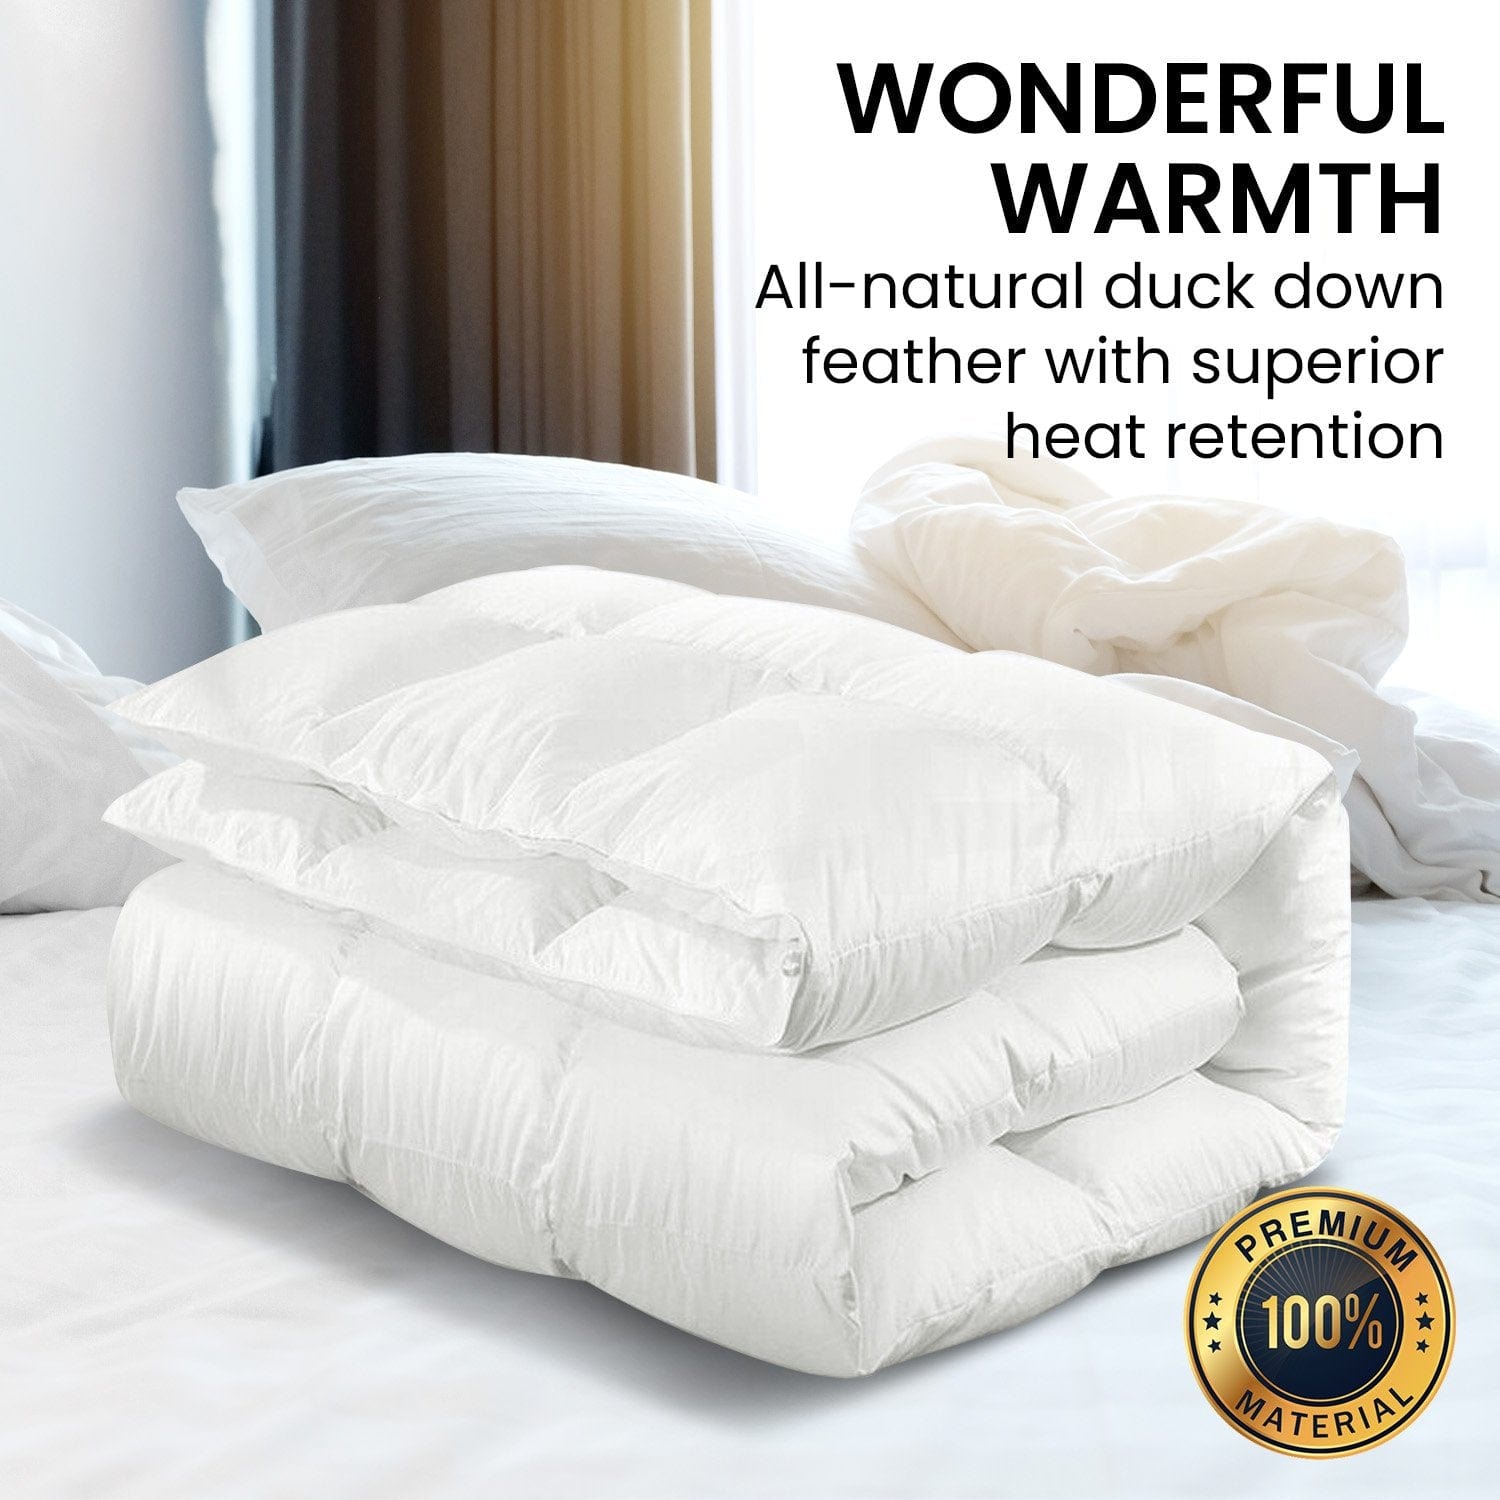 500GSM Duck Down Feather Quilt Comforter Doona - Queen